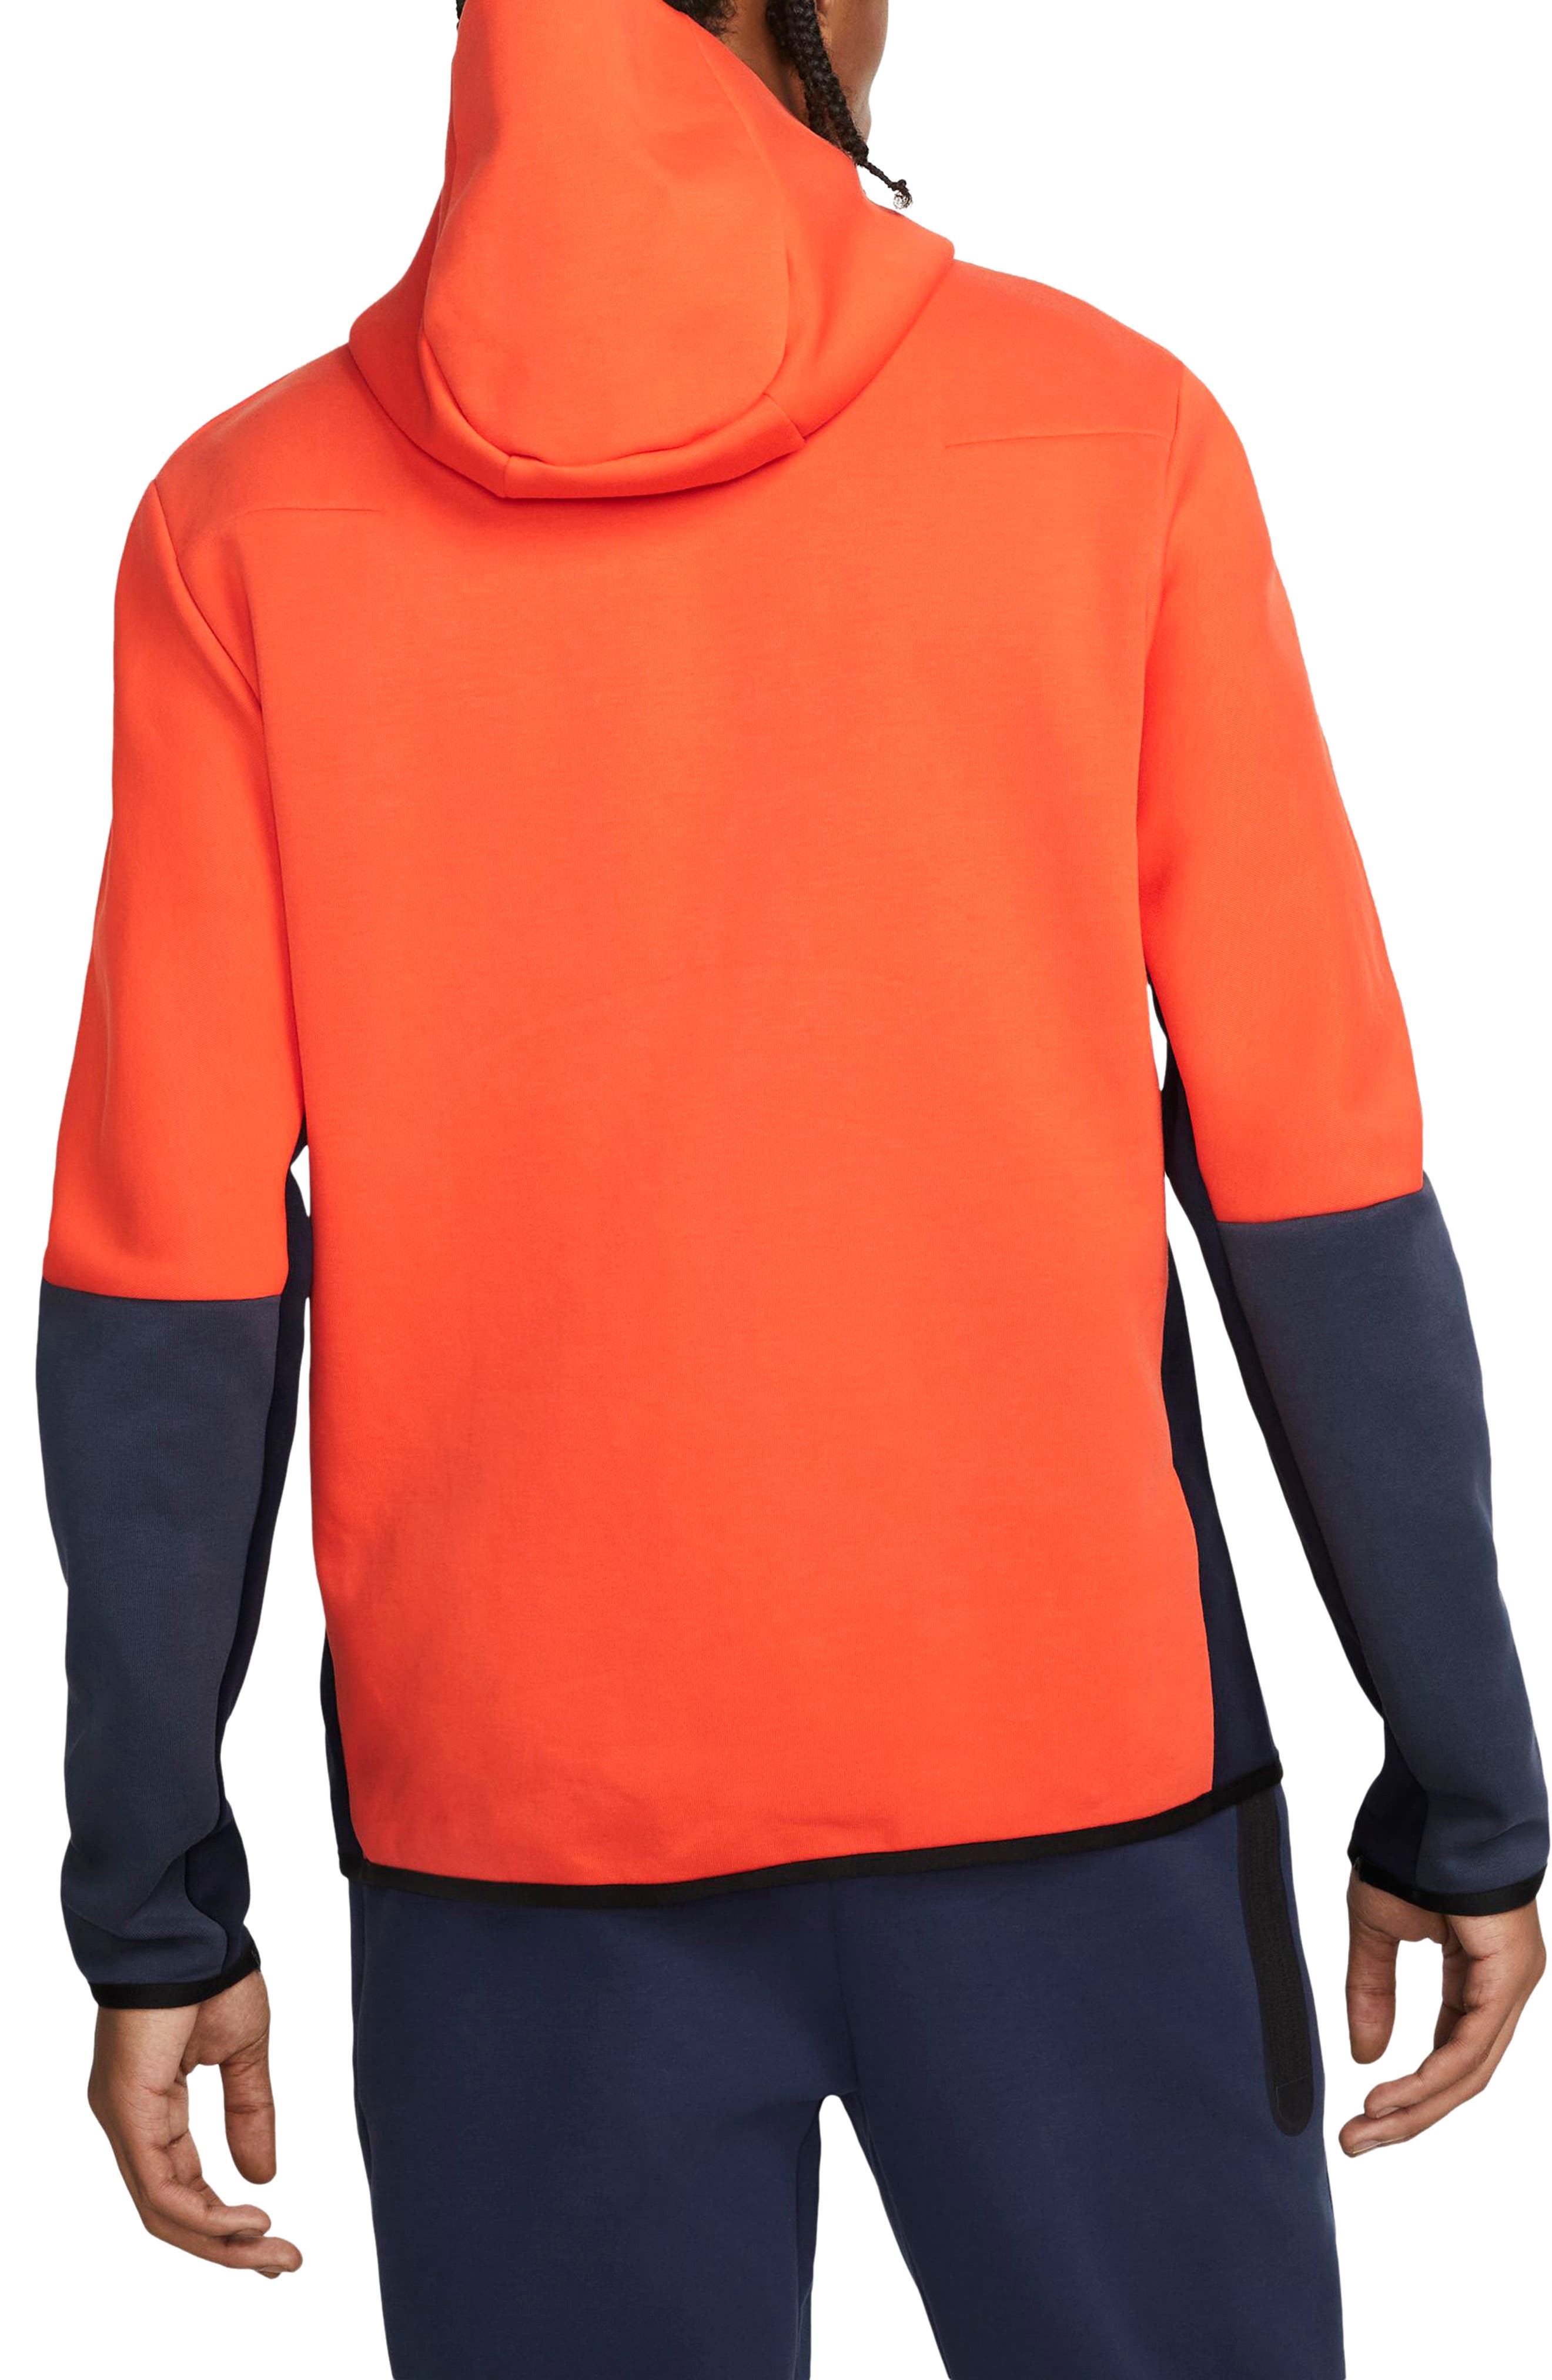 Bright Navy Heather Essentials Mens Tech Fleece Full-Zip Hooded Active Sweatshirt Medium